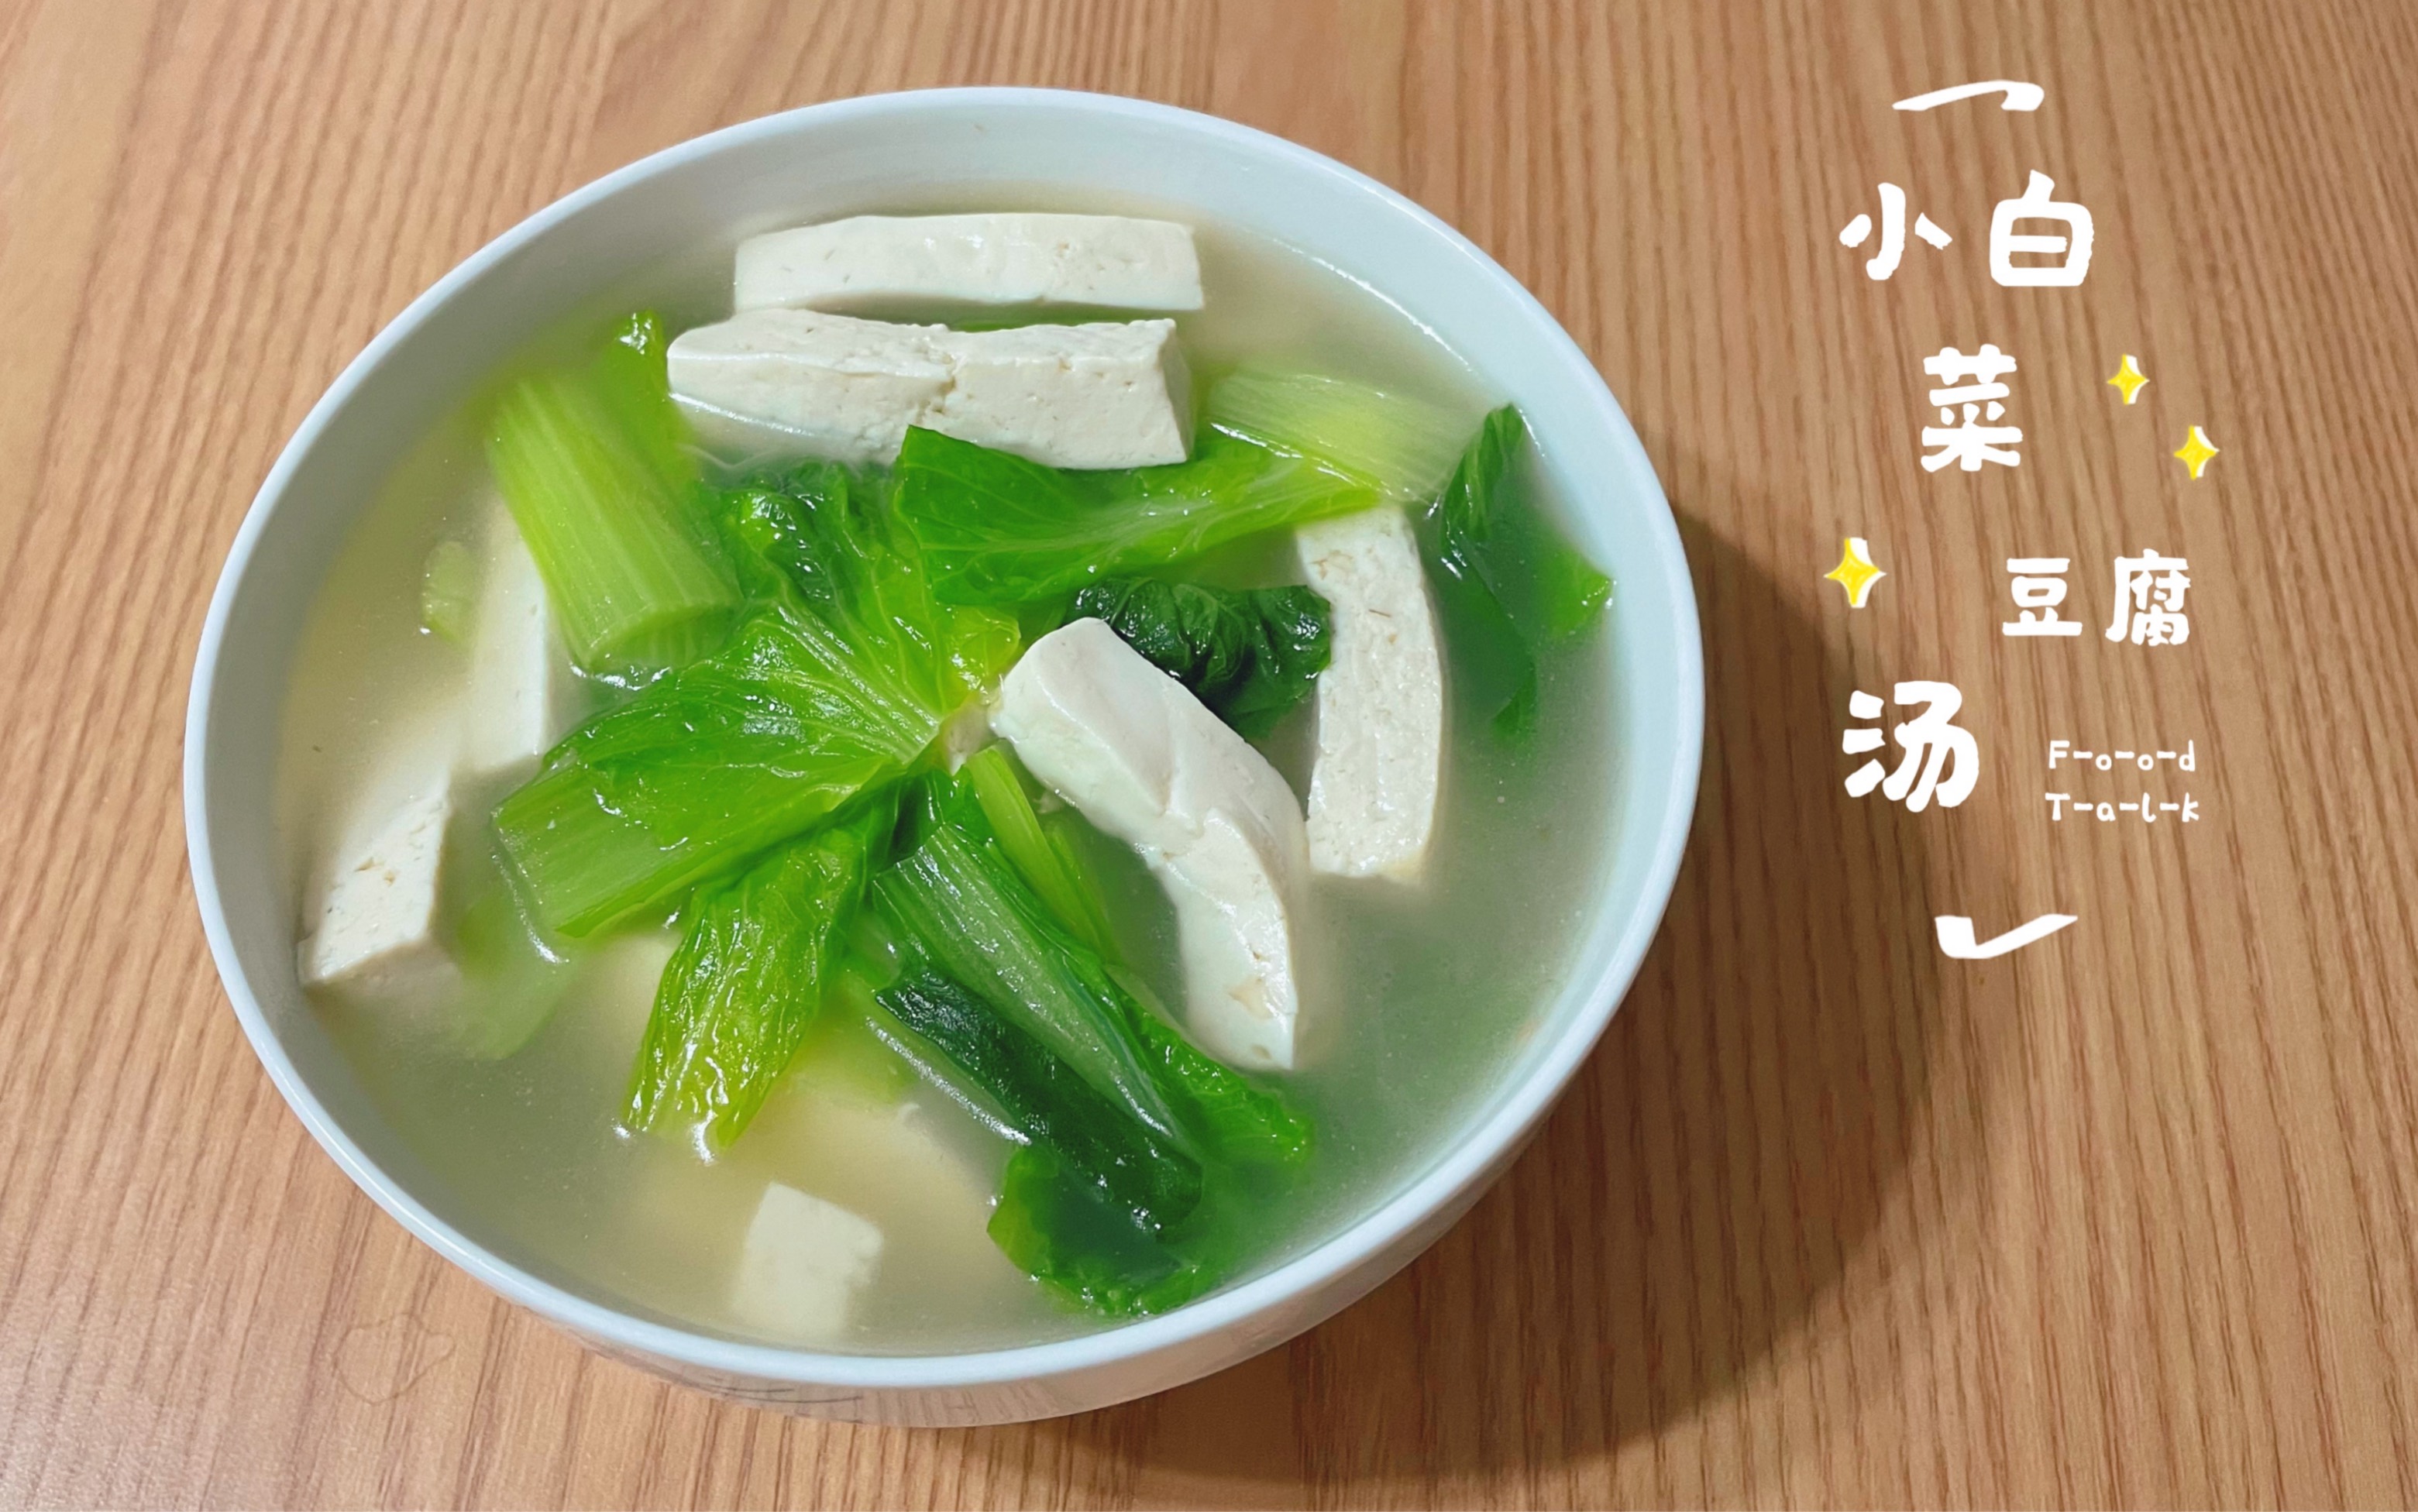 清淡饮食,低油低脂,汤鲜味美的小白菜豆腐汤!